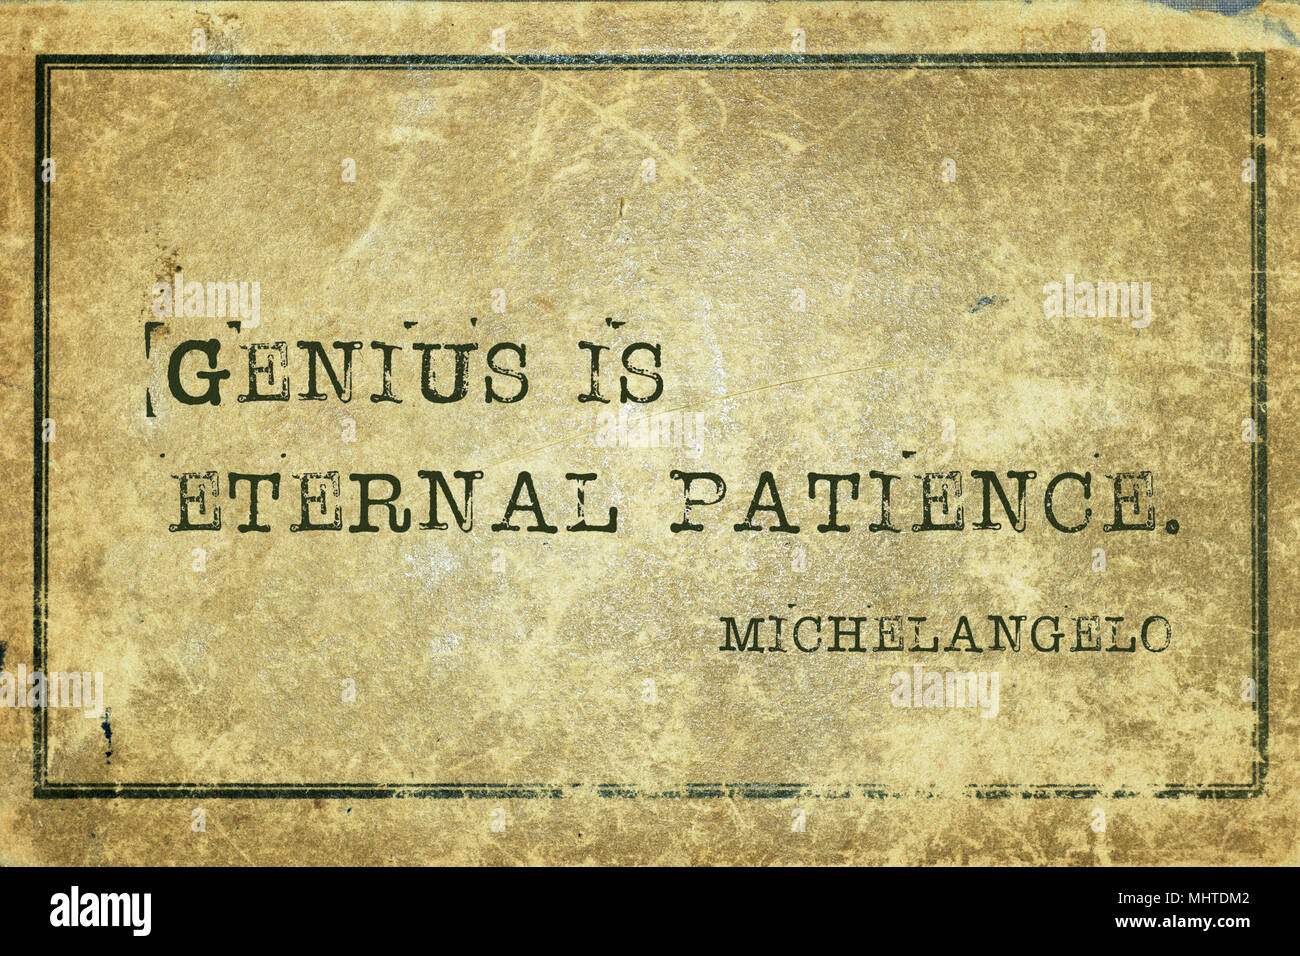 Genius è eterna pazienza - antico scultore italiano Michelangelo preventivo stampato su grunge cartone vintage Foto Stock